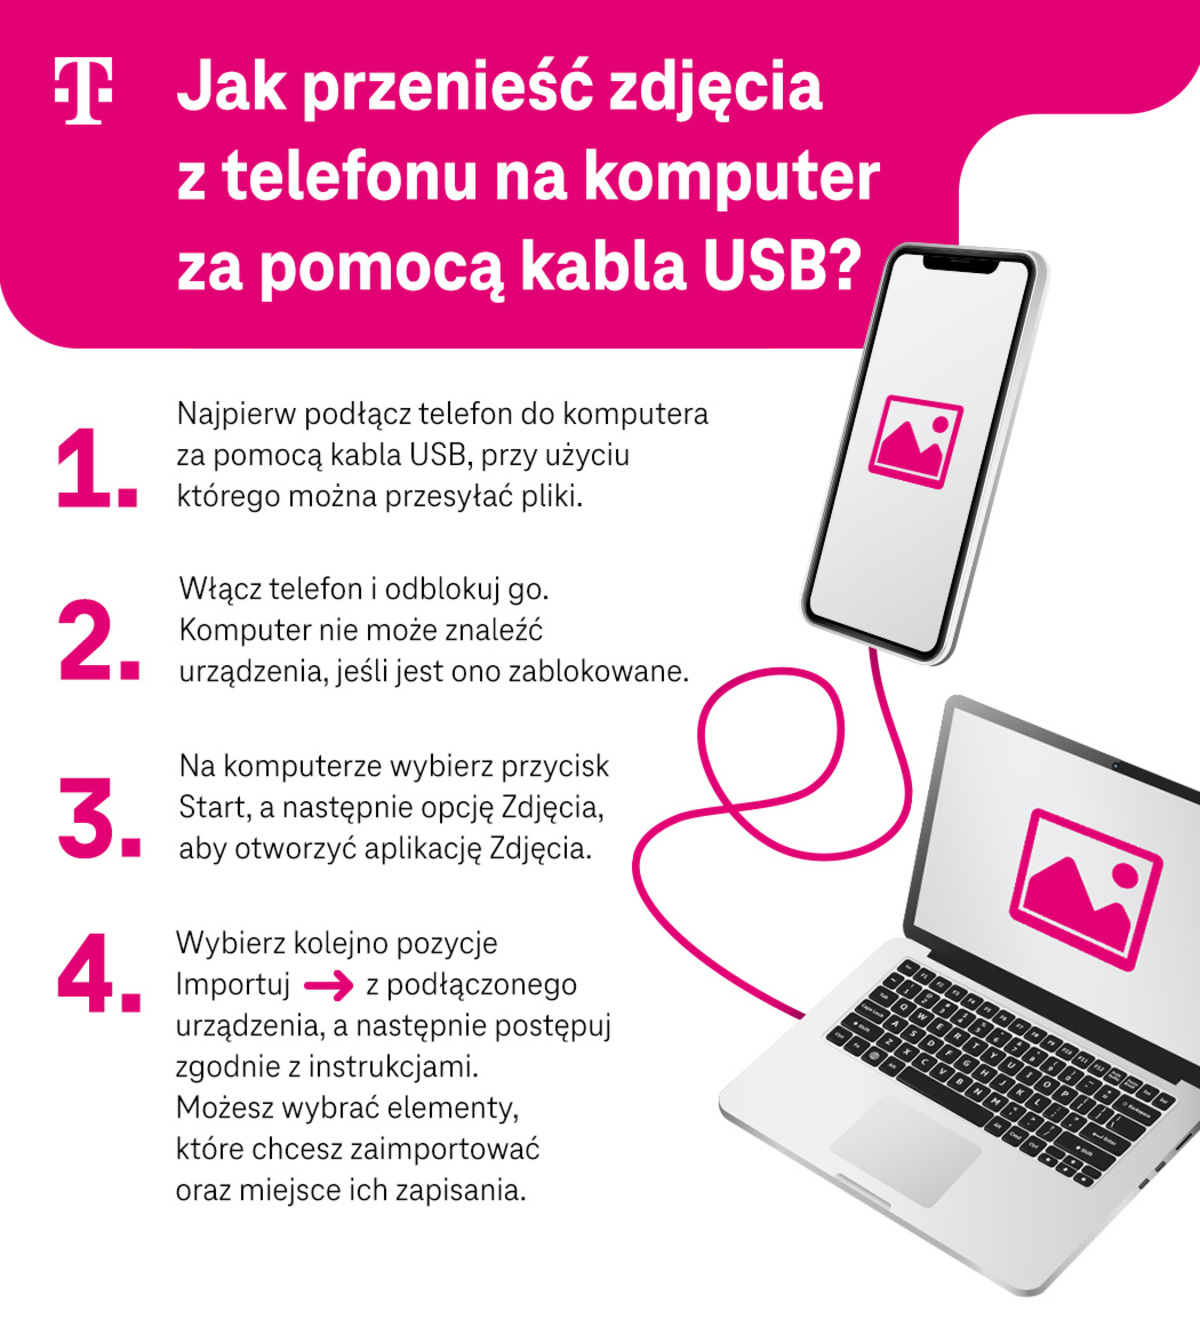 Jak przenieść zdjęcia z telefonu na komputer za pomocą kabla USB - infografika